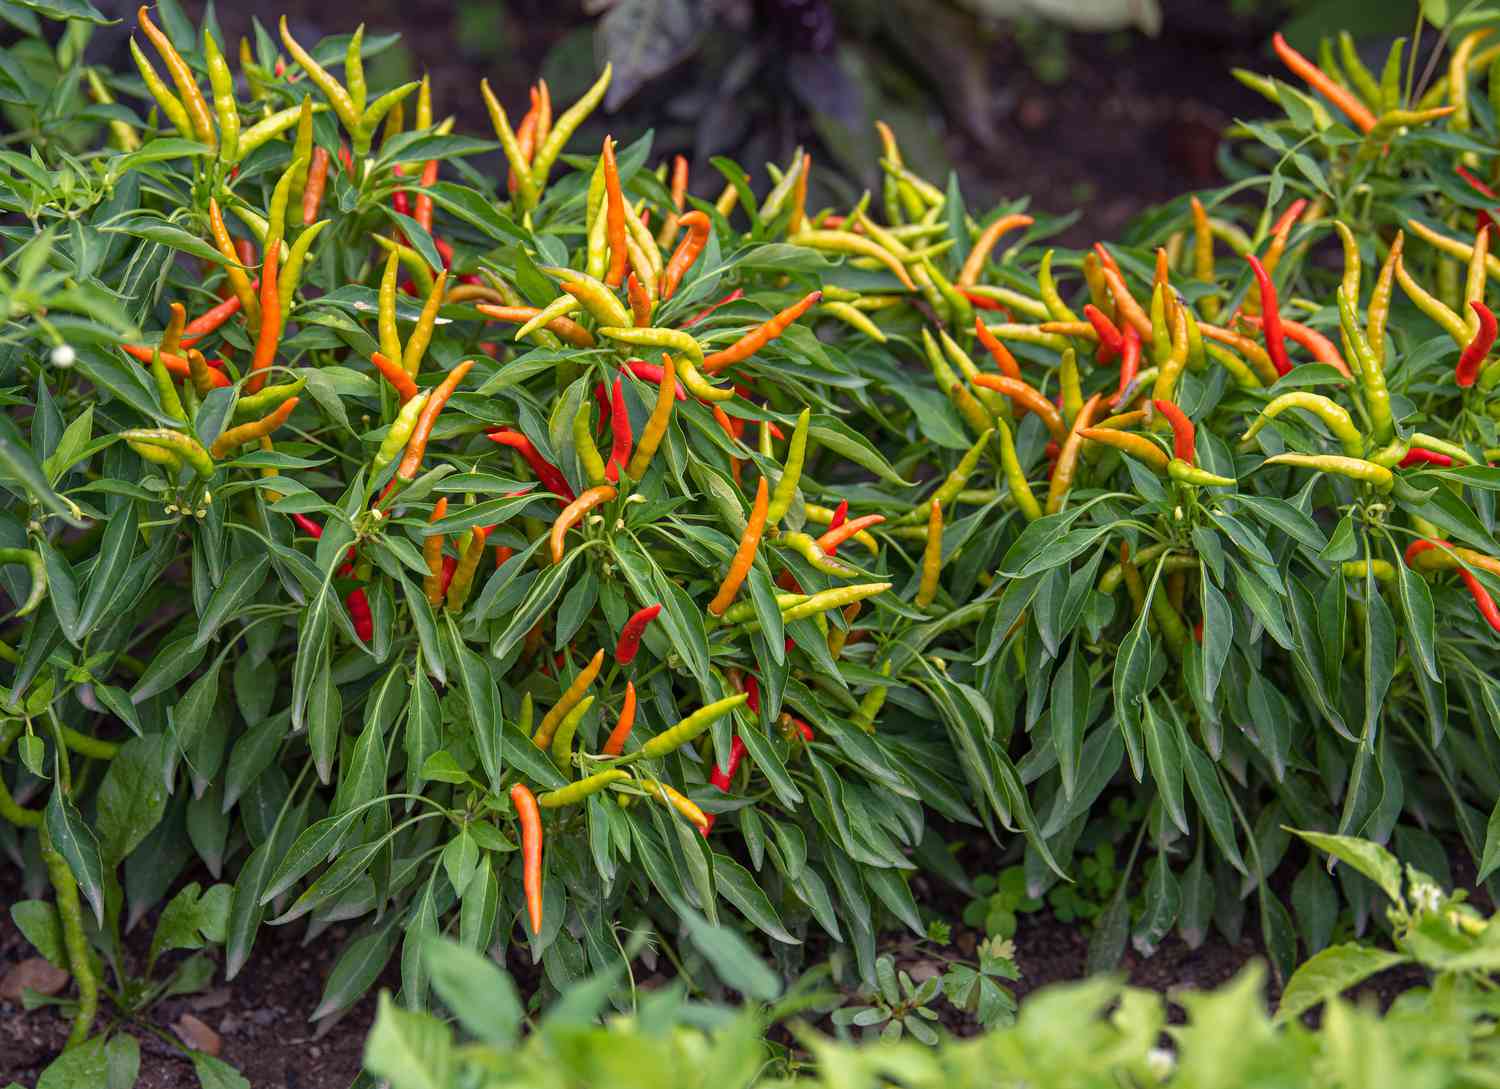 Plantas hortícolas de pimientos ornamentales con pimientos finos de color naranja, amarillo y rojo sobre hojas largas y finas